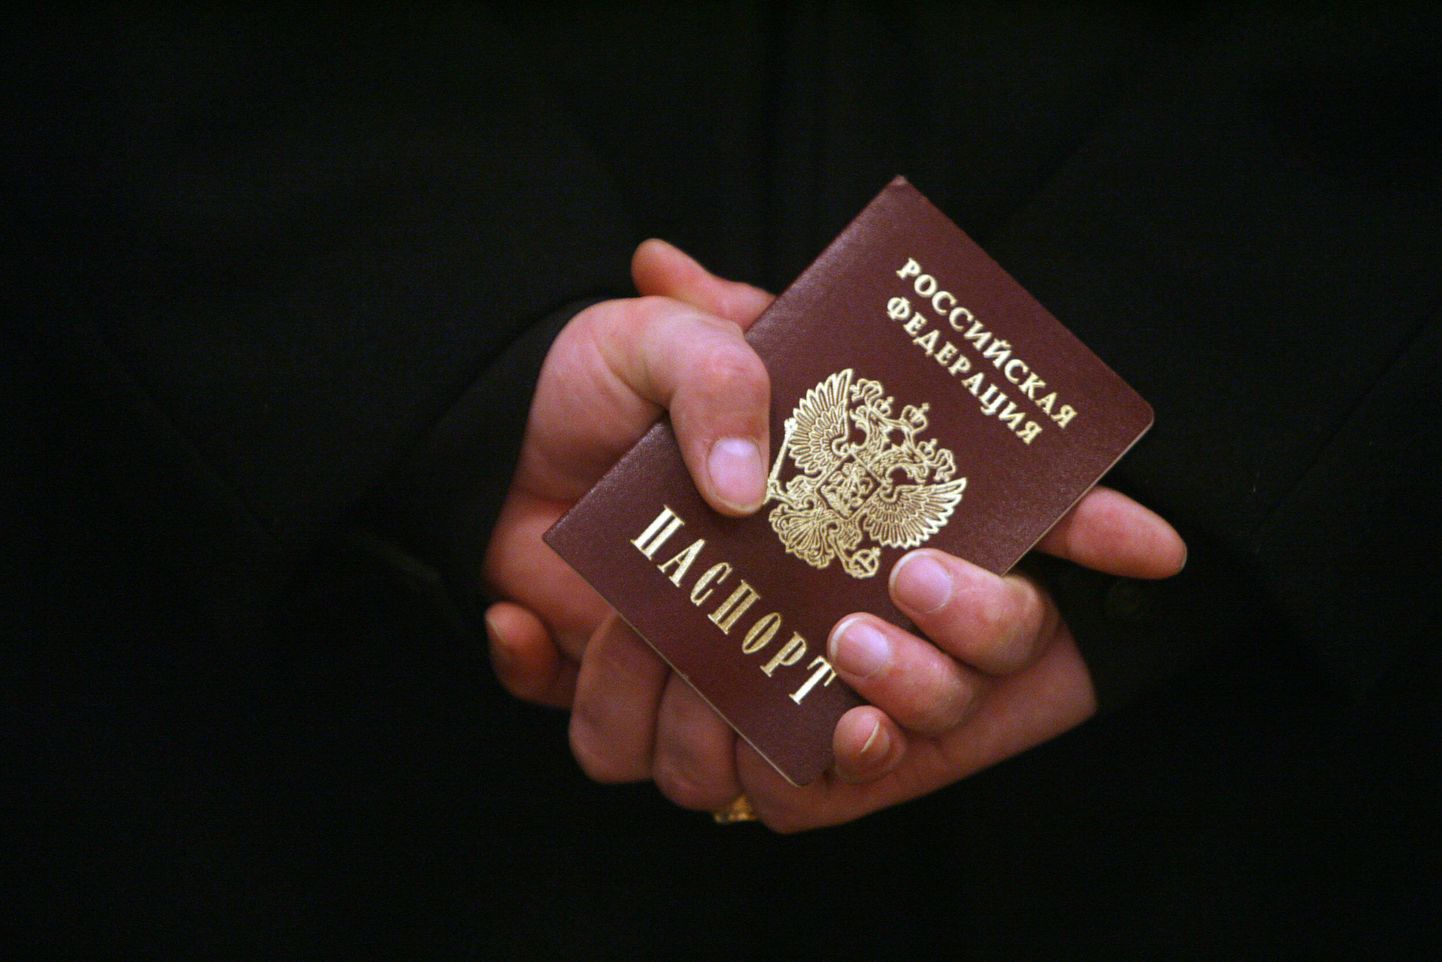 Паспорт гражданина Российской Федерации.